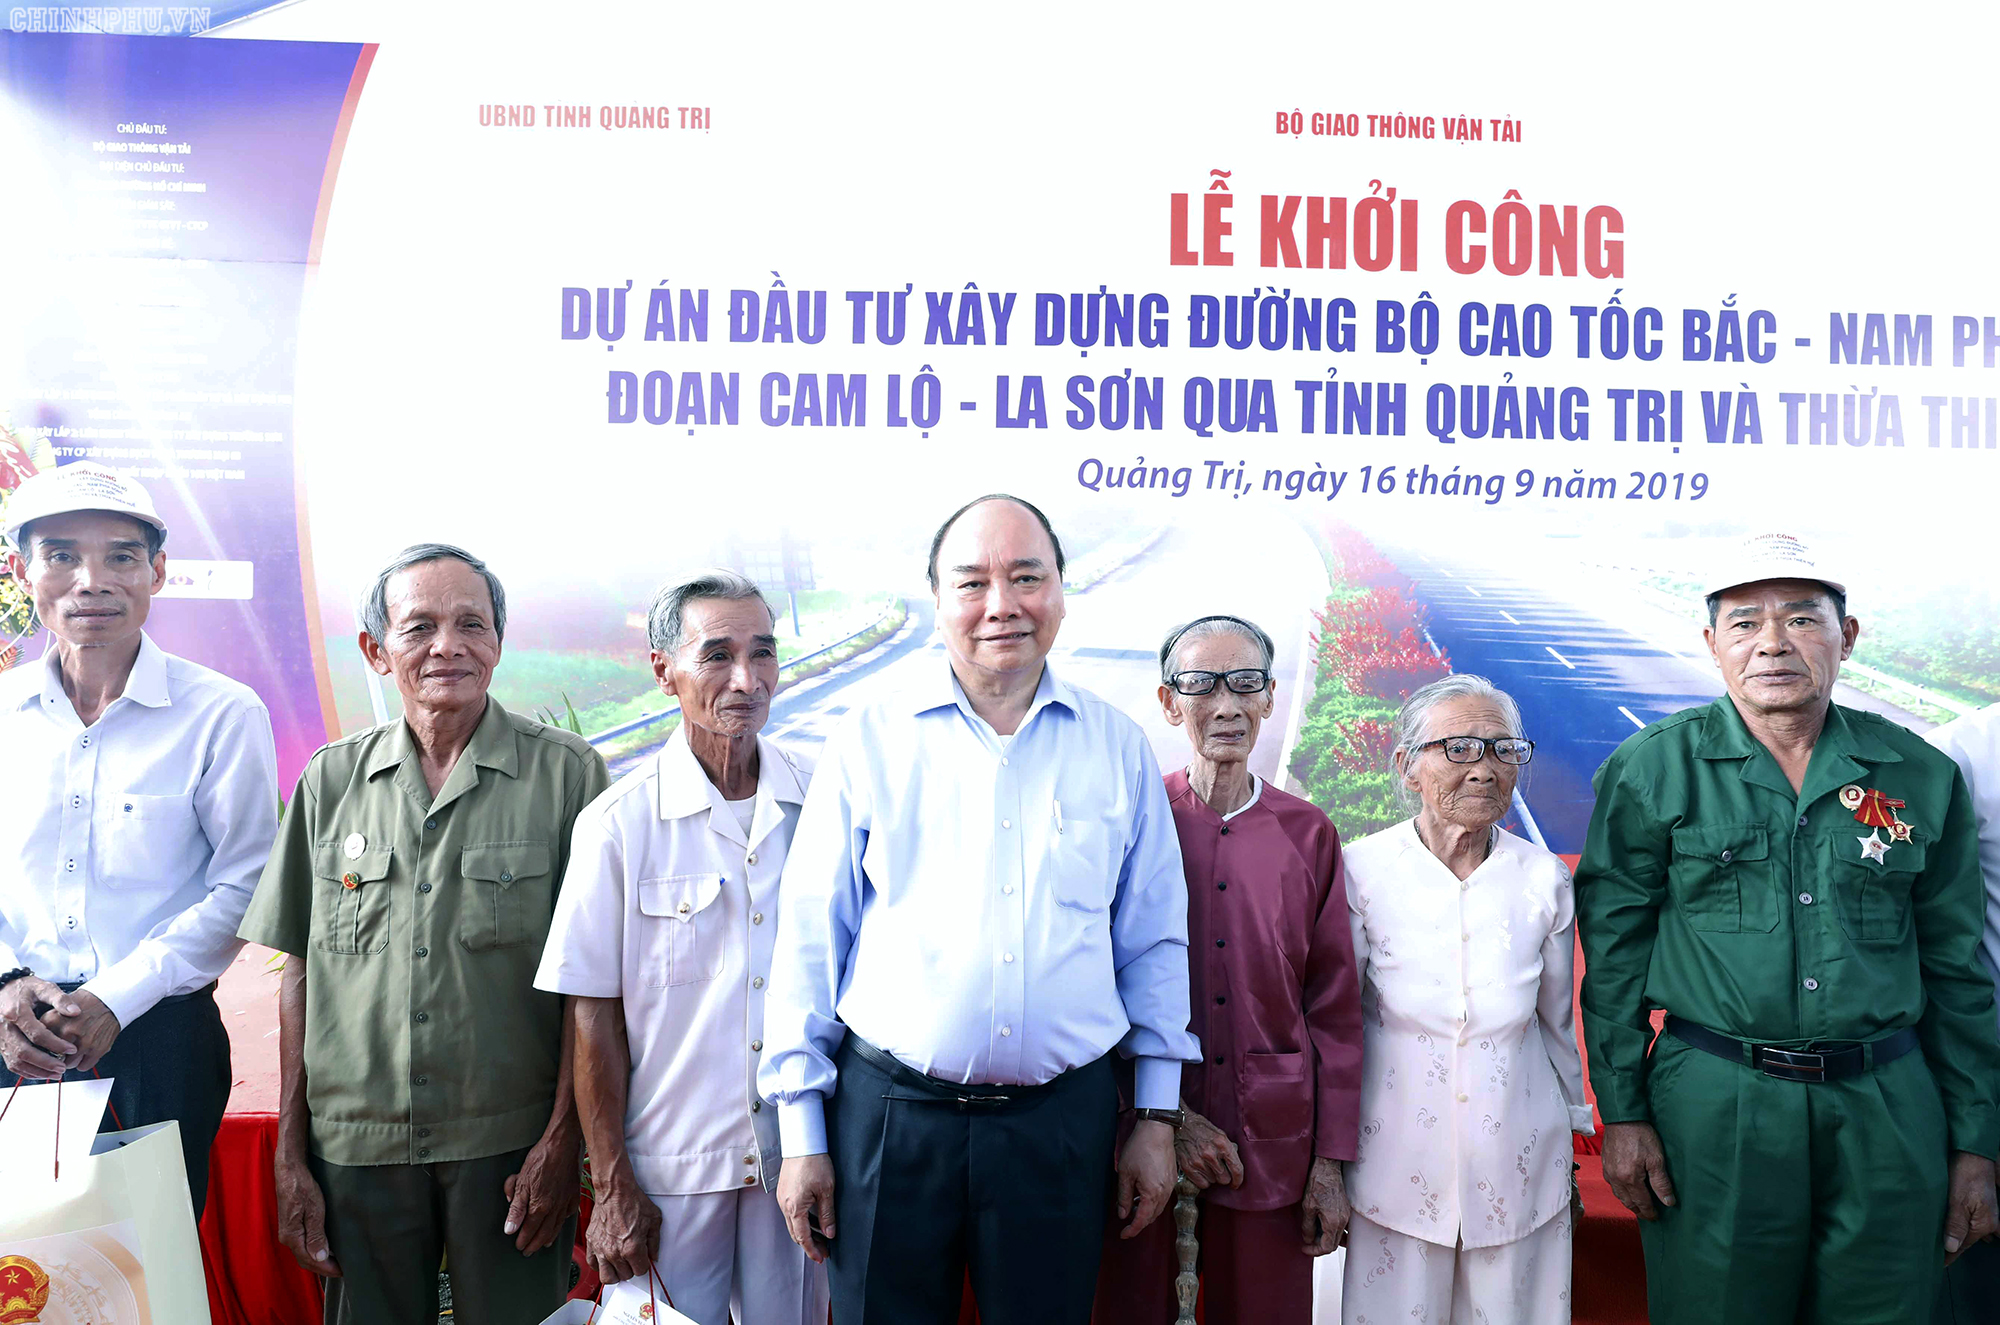 Thủ tướng Nguyễn Xuân Phúc lưu ý chính quyền địa phương các cấp quan tâm chăm lo, tạo điều kiện cho người dân có chỗ sinh sống, sản xuất, kinh doanh, ổn định cuộc sống - Ảnh: Thủ tướng  và người dân trong vùng dự án (VGP/Quang Hiếu)